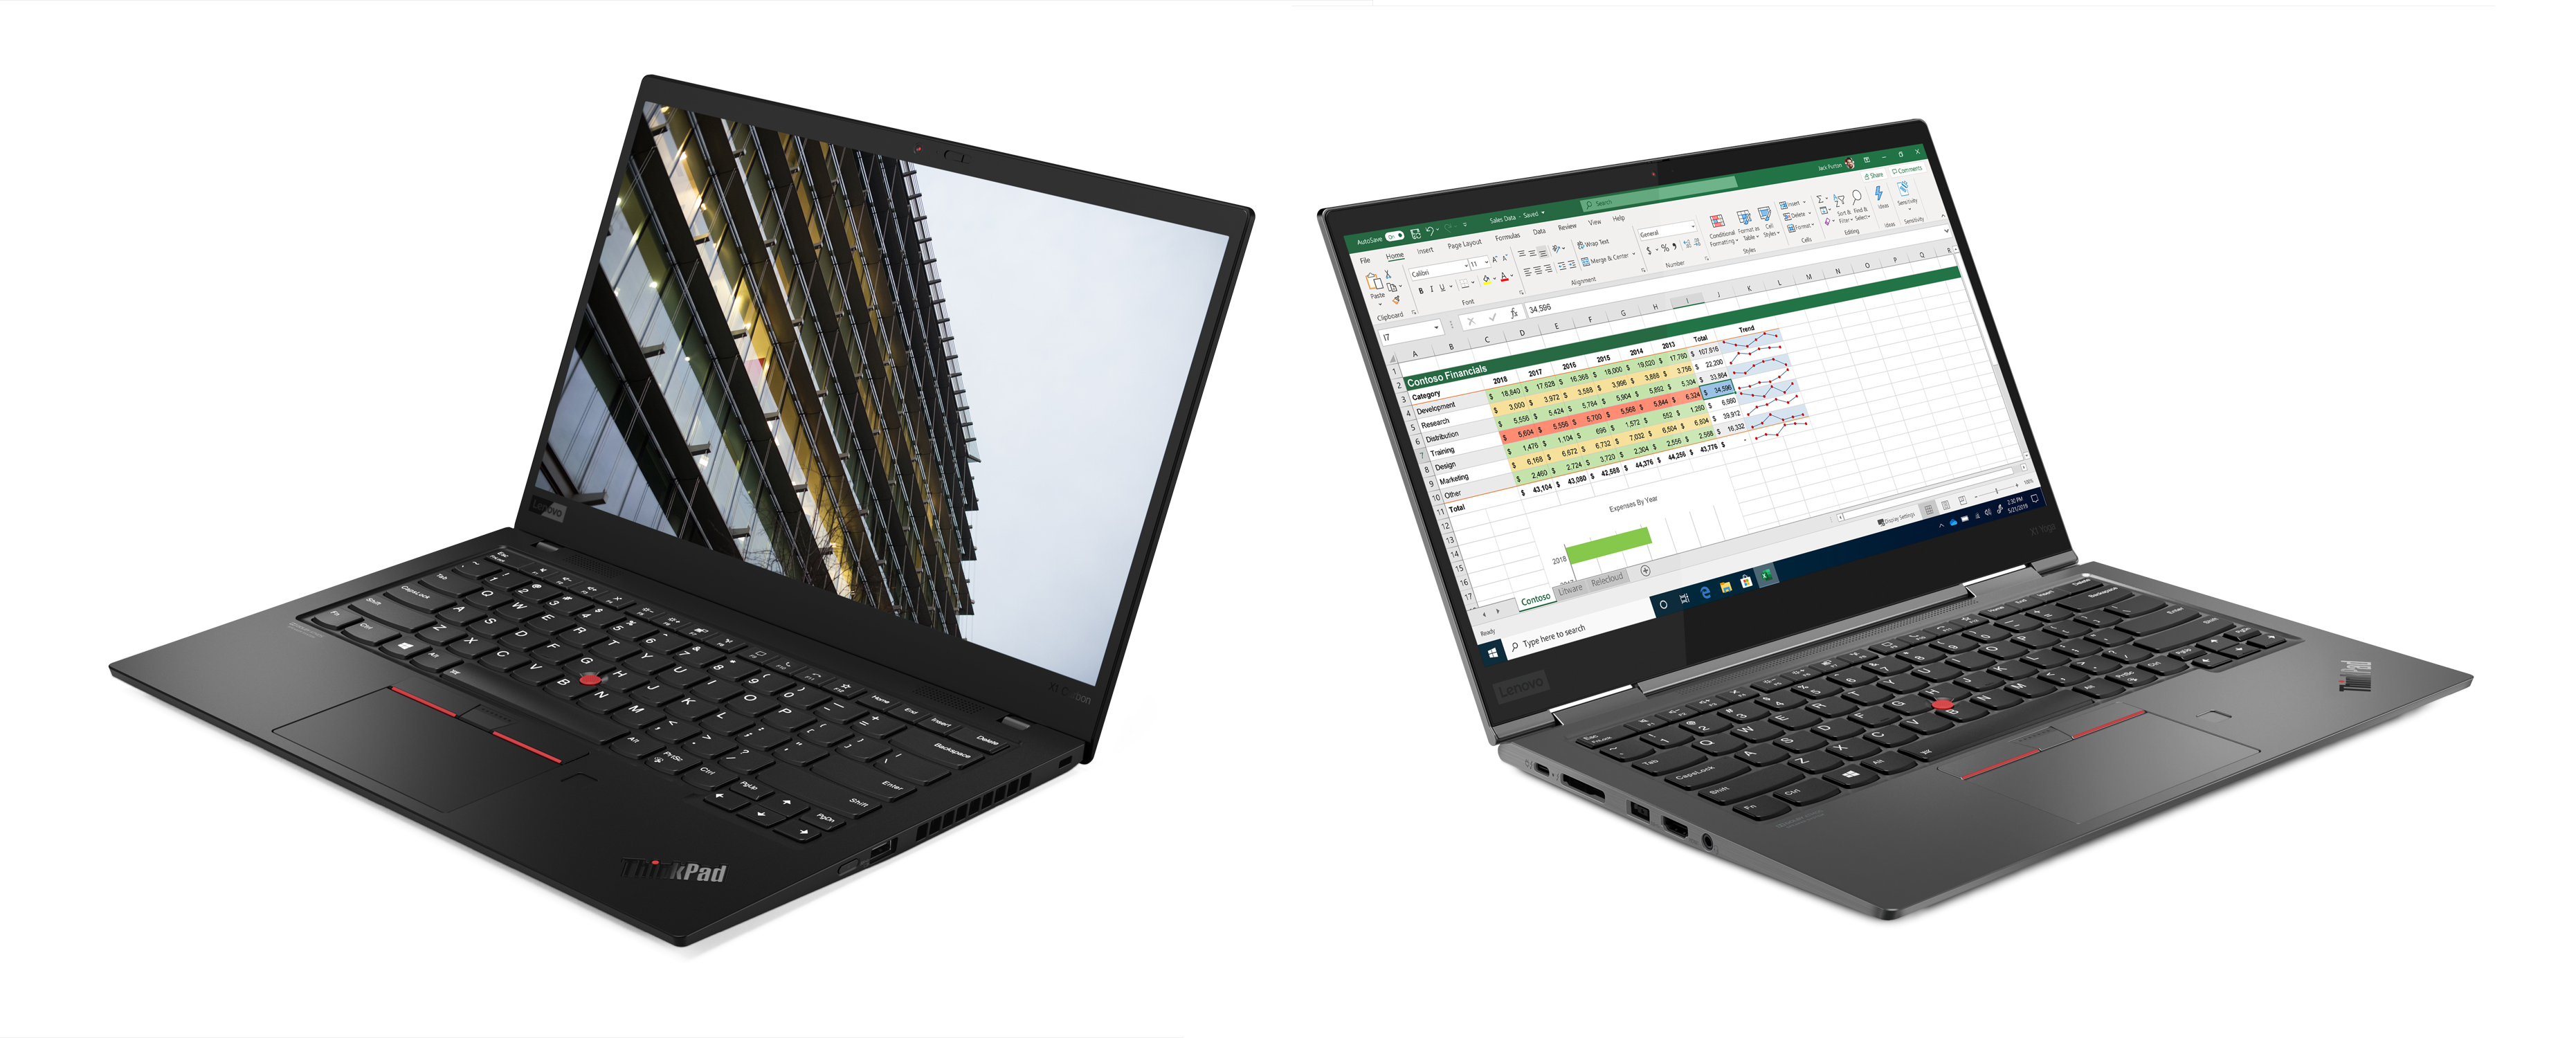 Lenovo upgrades the ThinkPad X1 Carbon and ThinkPad X1 Yoga to